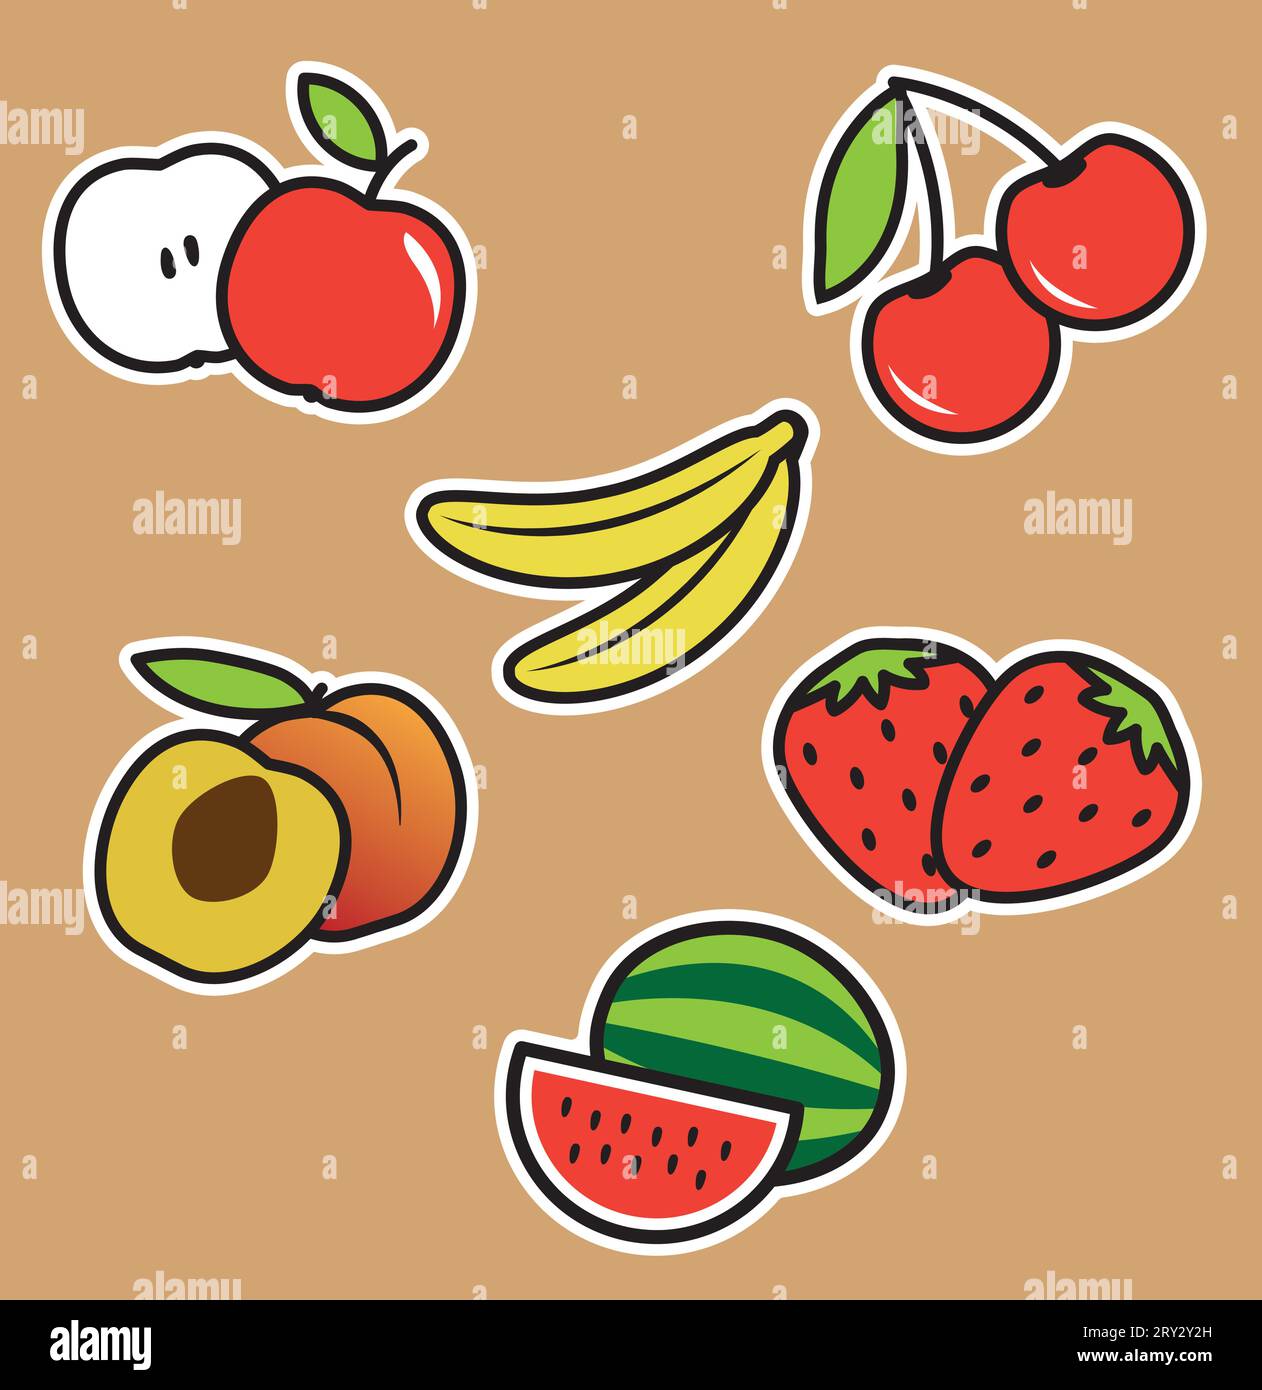 Set mit Schnittlinien-Aufklebern von Früchten. Brauner Hintergrund. Apfel, Kirsche, Banane, Pfirsich, Erdbeere, Wassermelone. Stock Vektor